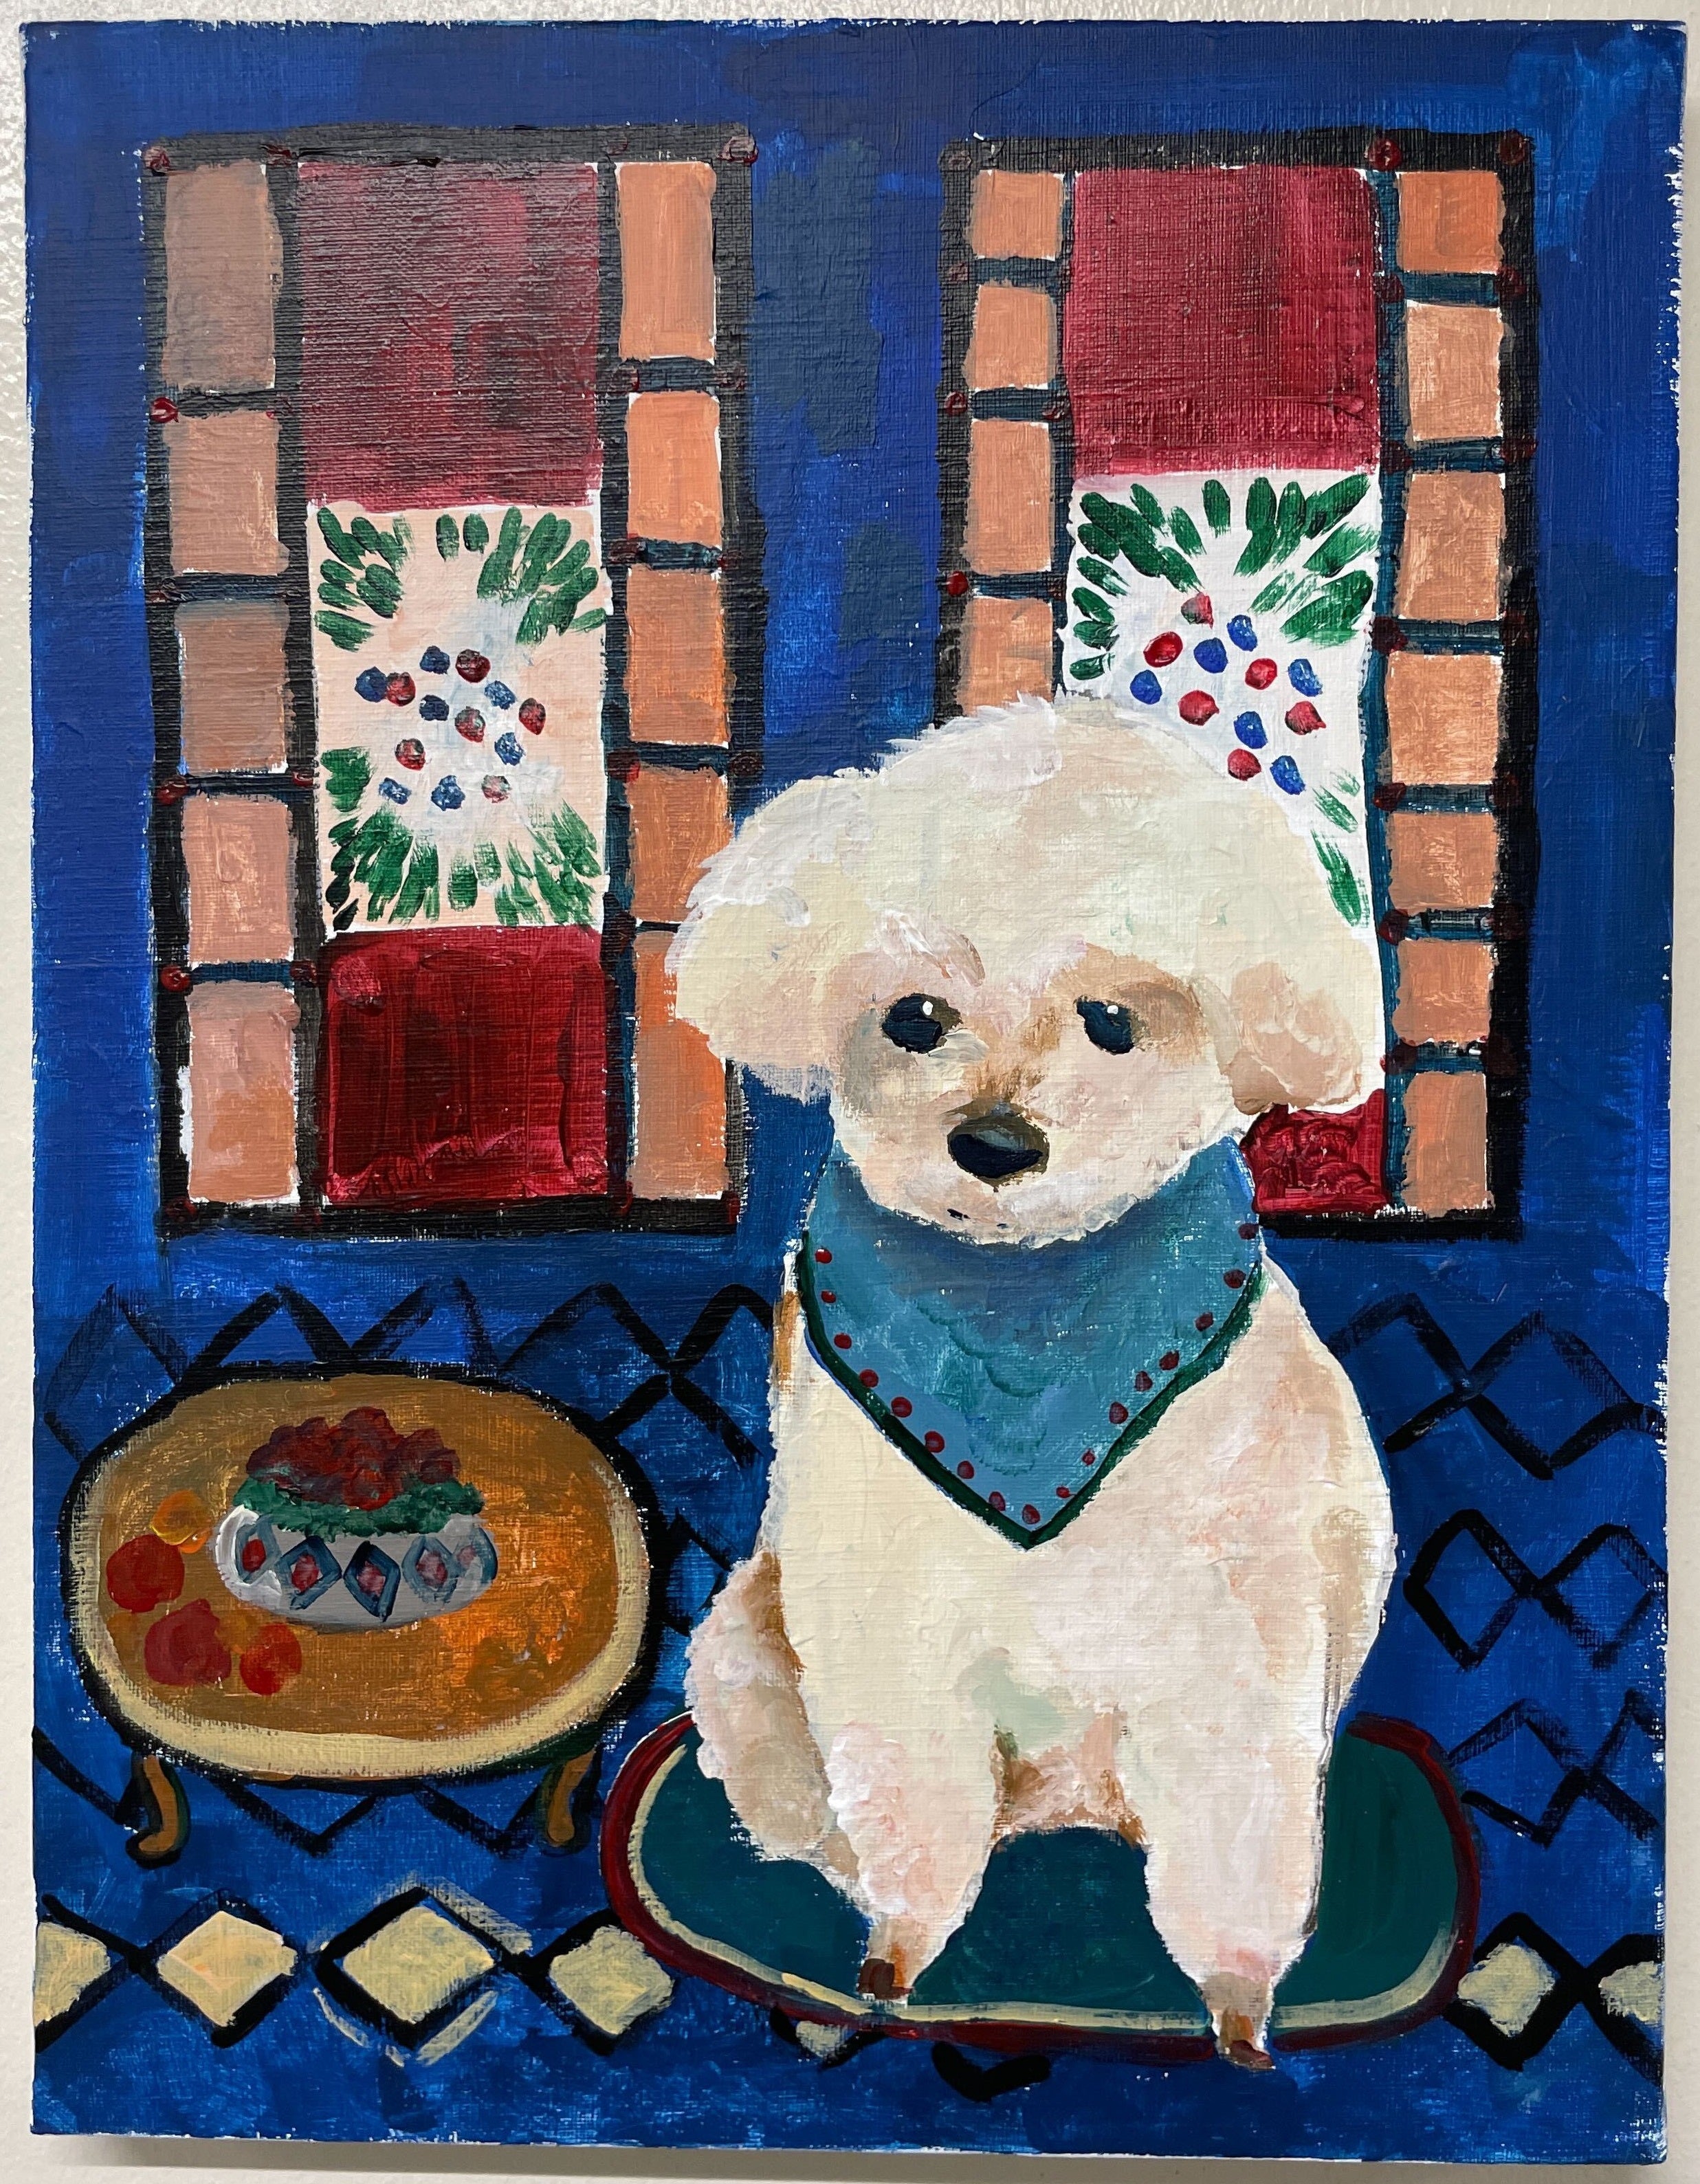 【上野/根津】10月21日(土) 10:00-12:30 | マティス風・猫の絵（Matisse-Style Animal Painting at Ueno/Nezu）